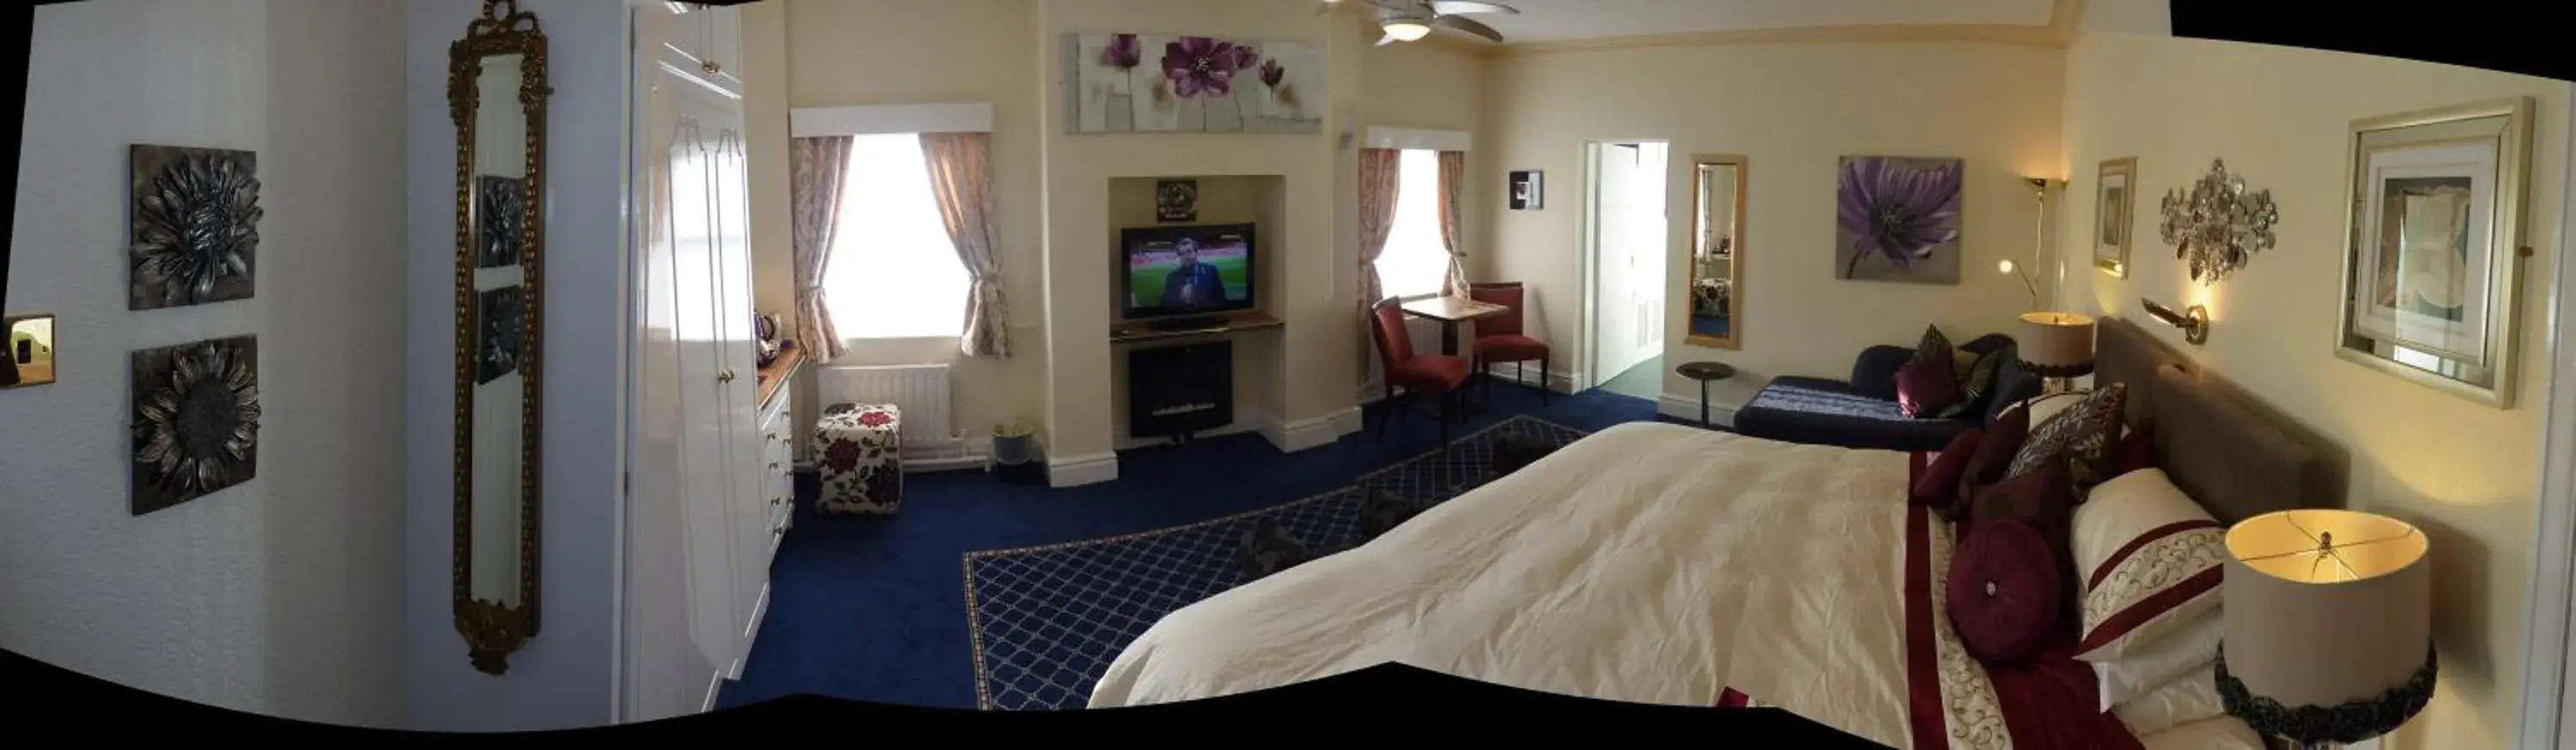 Bedroom in The Regal Hotel